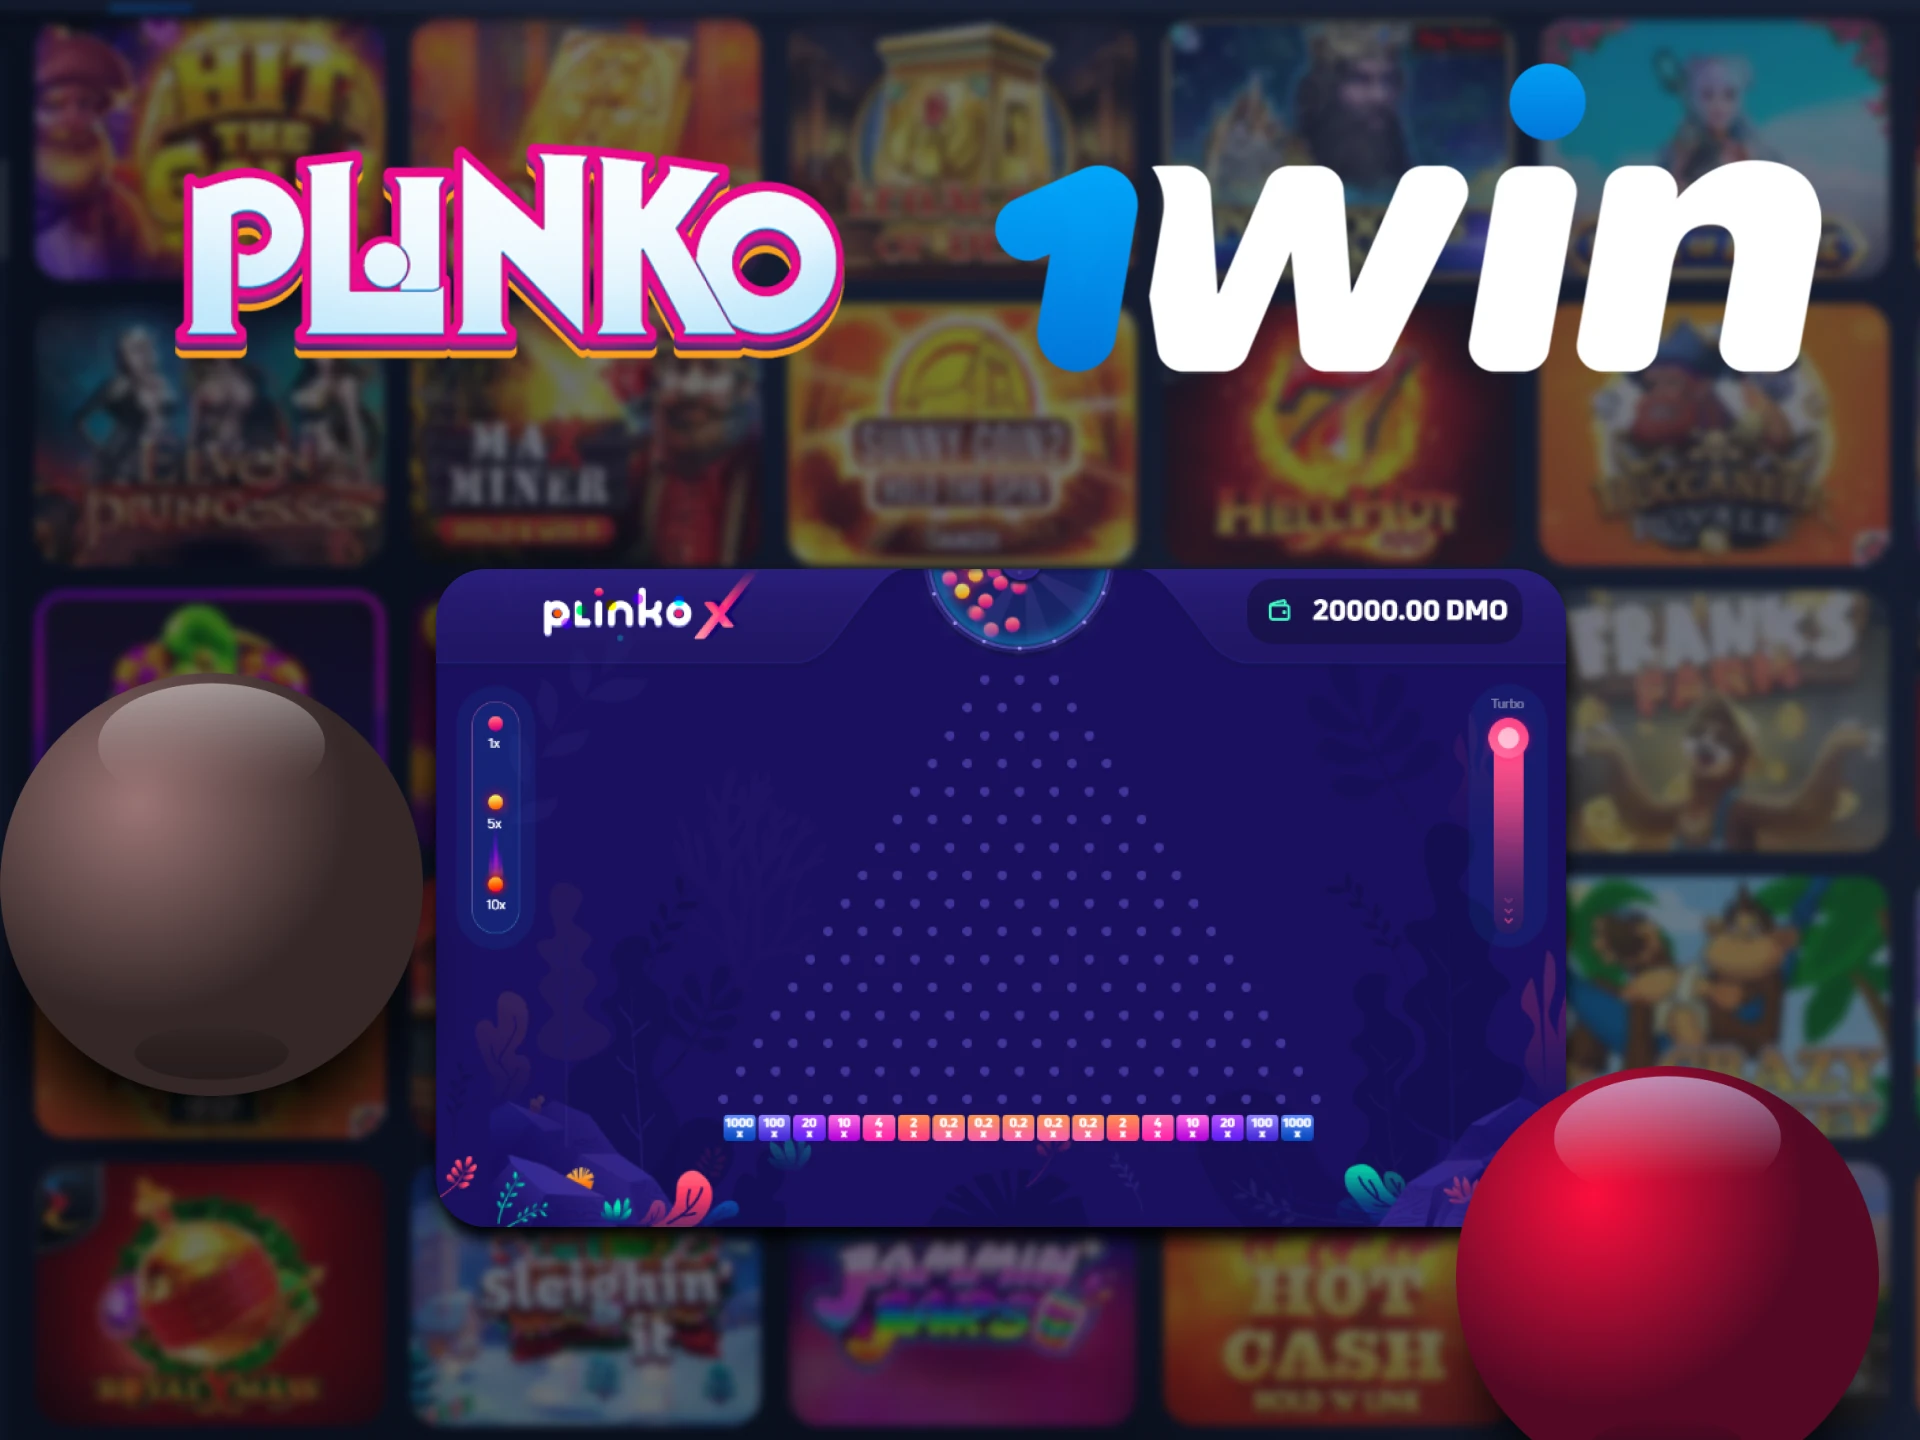 Juega al juego Plinko en casino 1win.